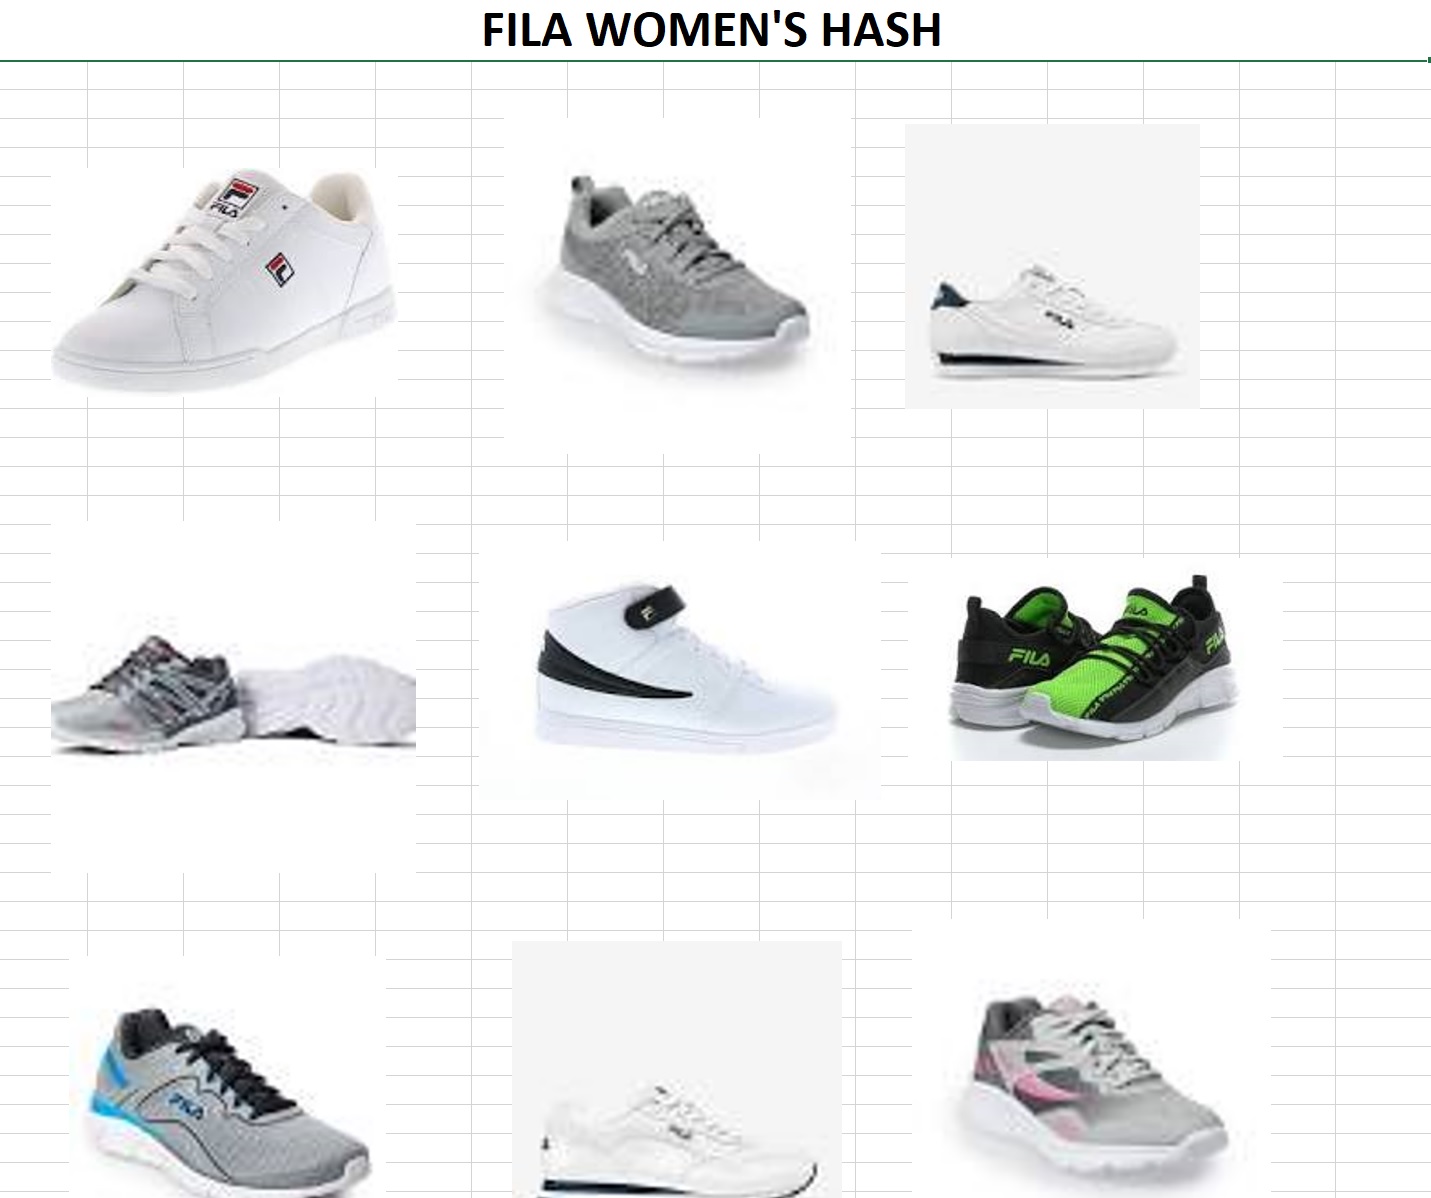 48644 - Fila Men's & Women's Hash Closeout USA